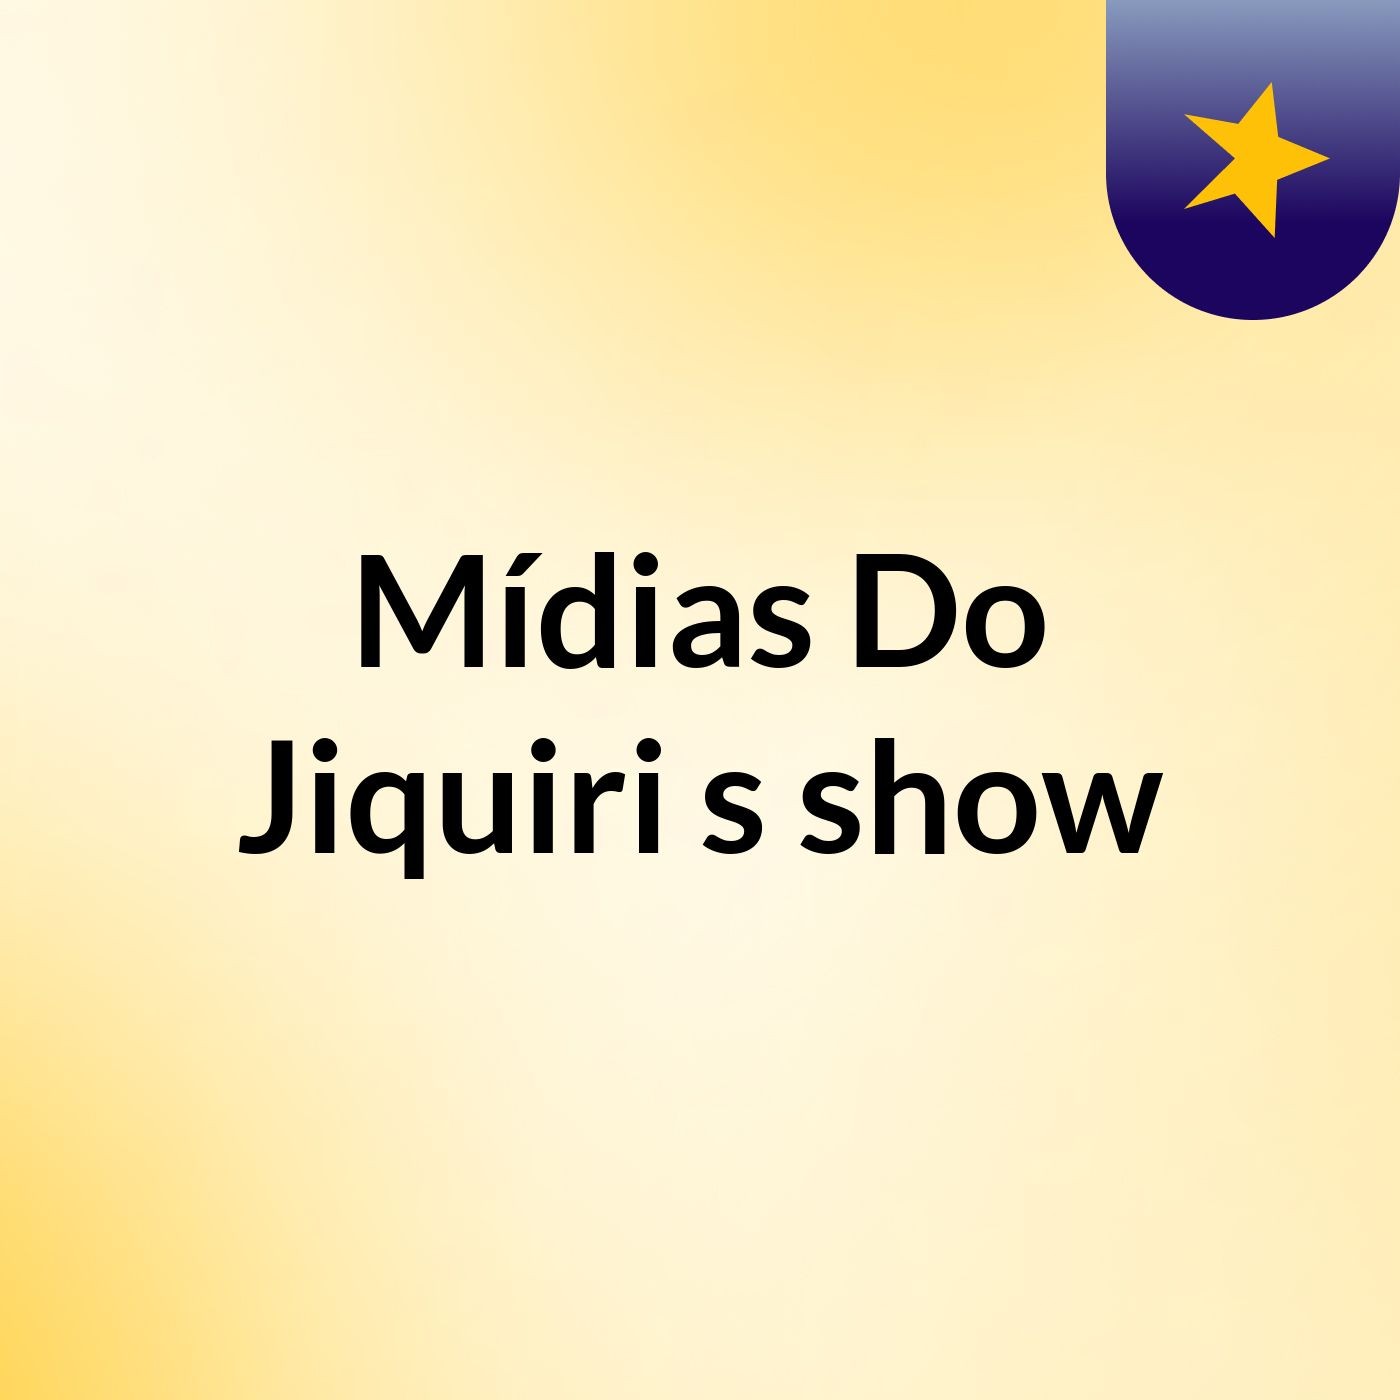 Mídias Do Jiquiri's show